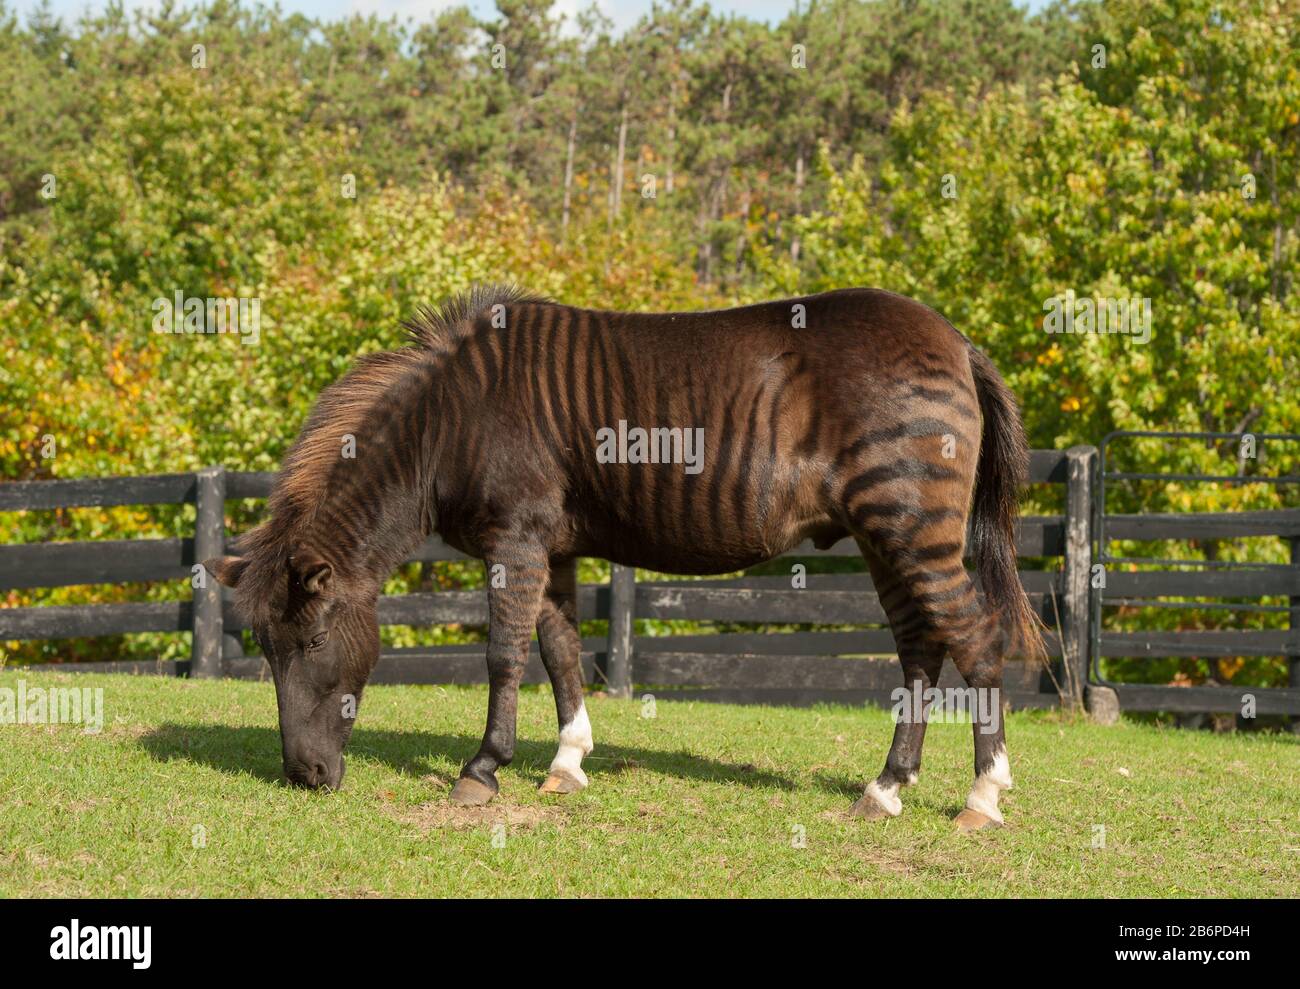 Zorse Full Body Shot of Striped nazionale Zorse equus zebra x equus calabus cavallo zebra croce animale pascolo in erba verde pascolo di campo di fattoria Foto Stock